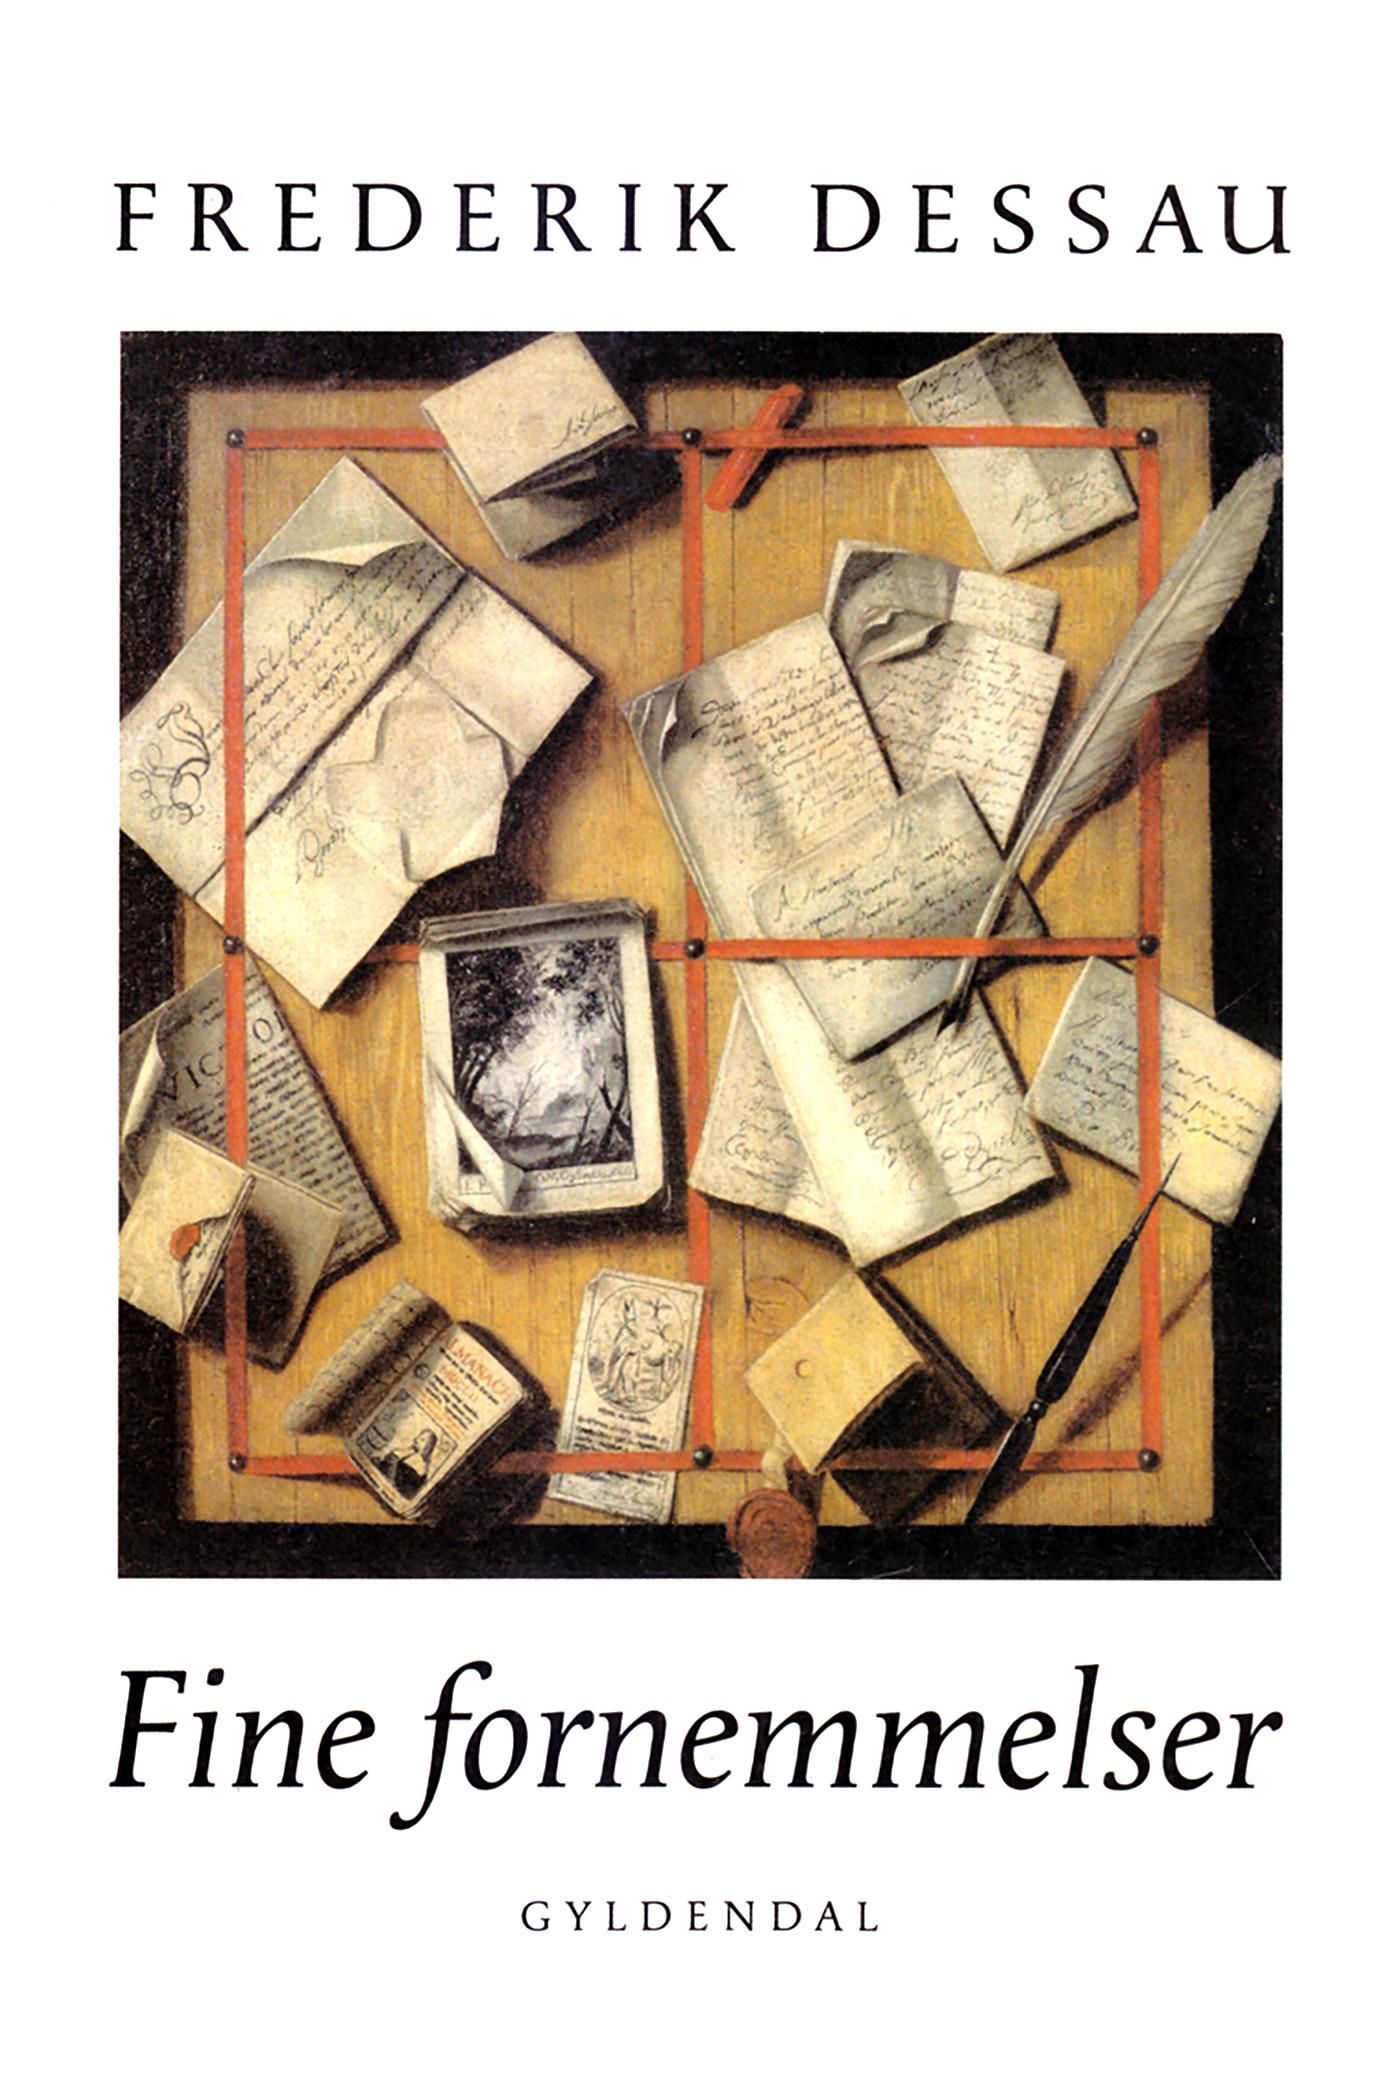 Fine fornemmelser, eBook by Frederik Dessau